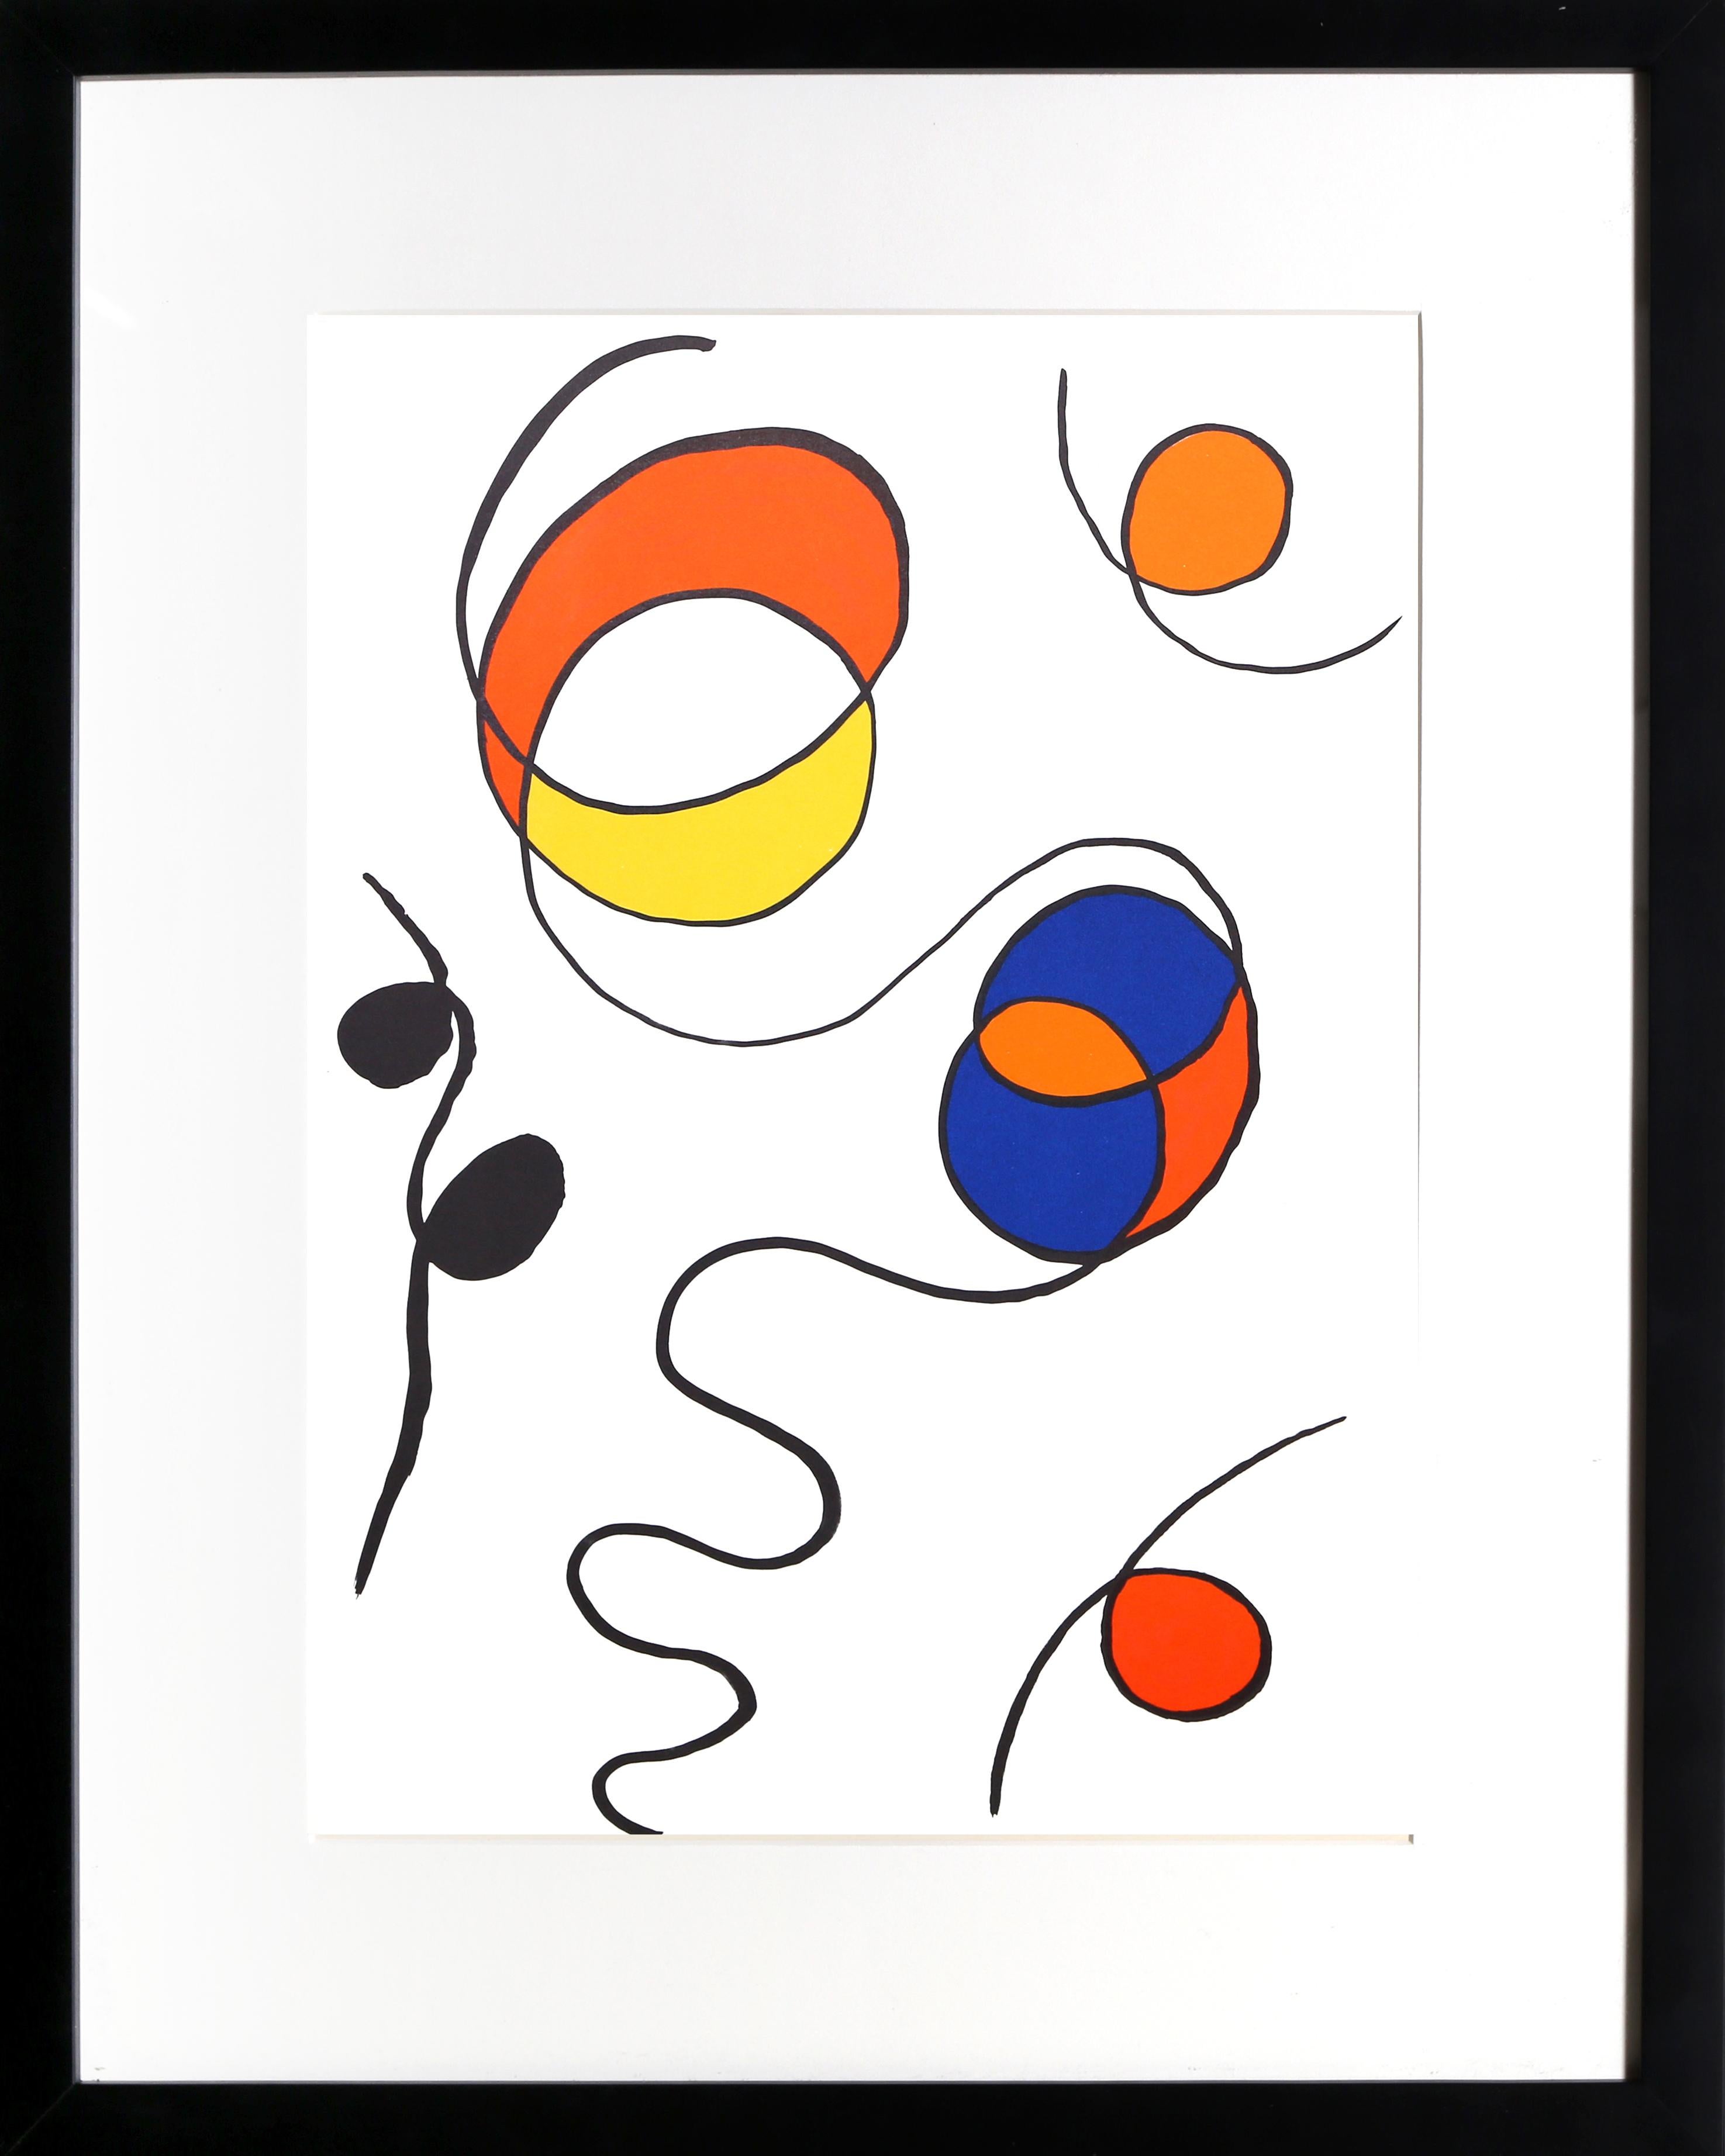 Sprials II aus Derriere Le Miroir von Alexander Calder, Amerikaner (1898-1976)
Datum: 1968
Lithographie
Größe: 15 x 11 Zoll (38,1 x 27,94 cm)
Drucker: Maeght, Paris
Verlag: Maeght Editeur, Paris